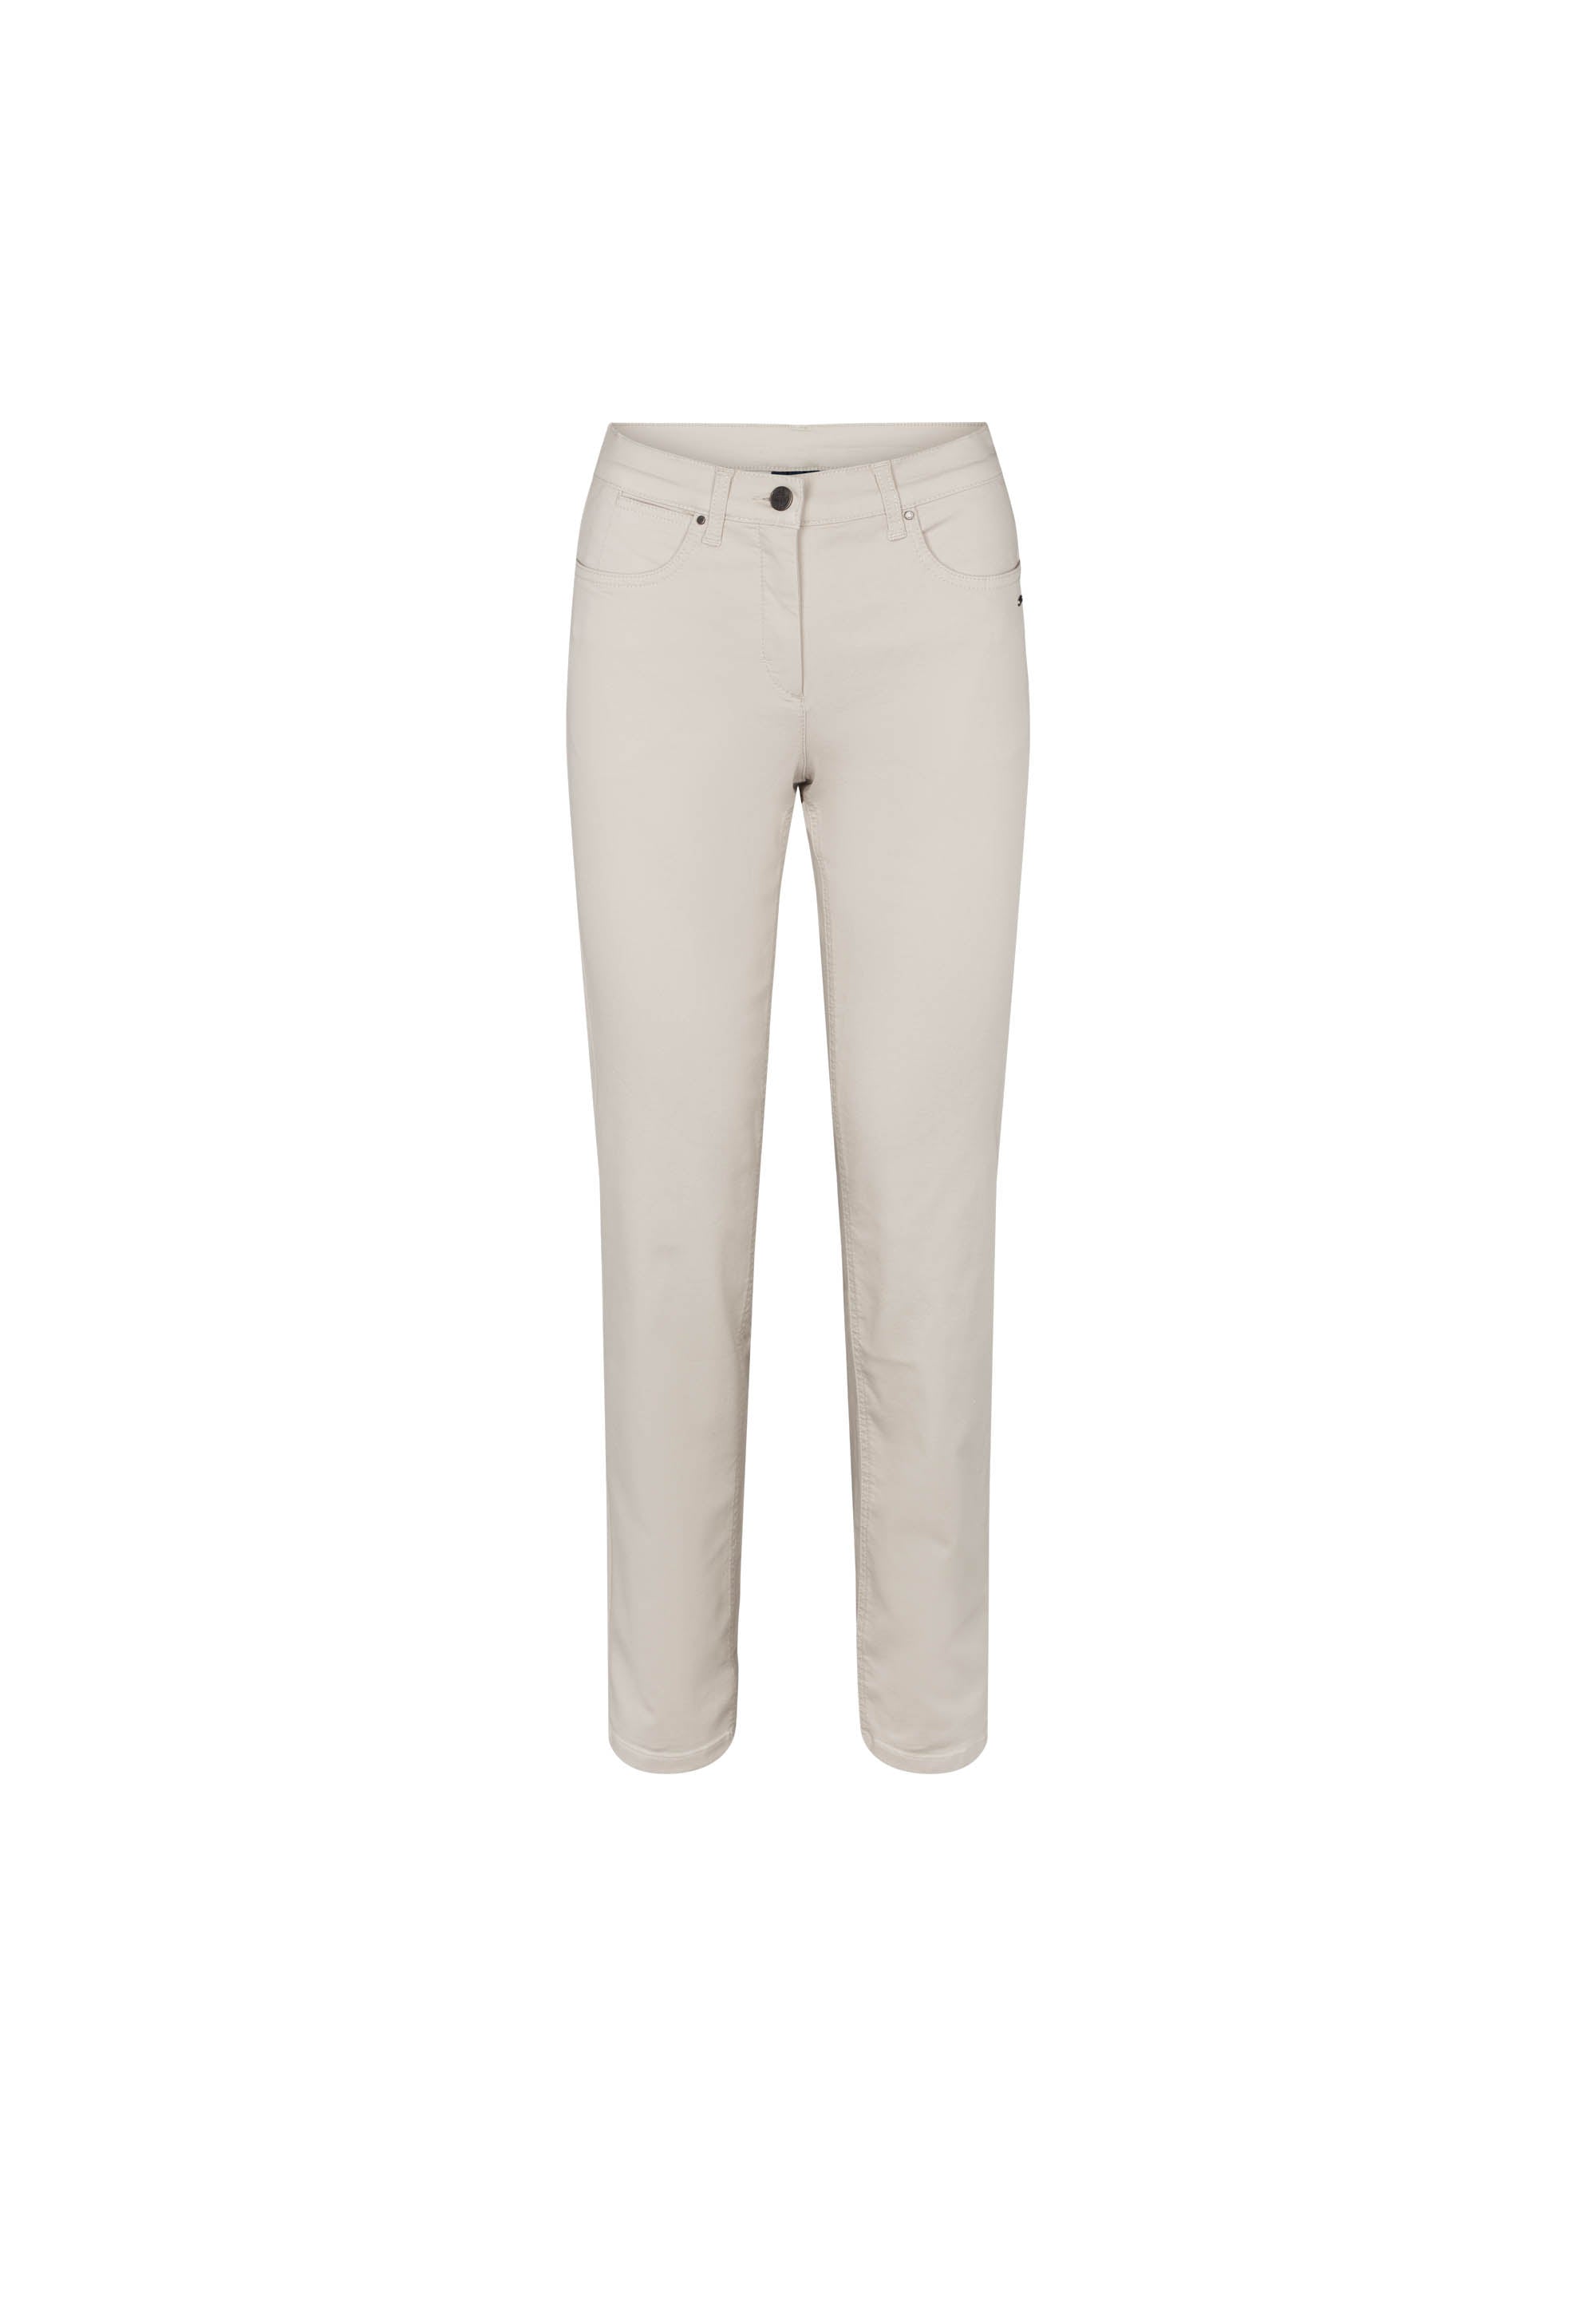 LAURIE Charlotte Regular - Short Length Trousers REGULAR 25107 Grey Sand